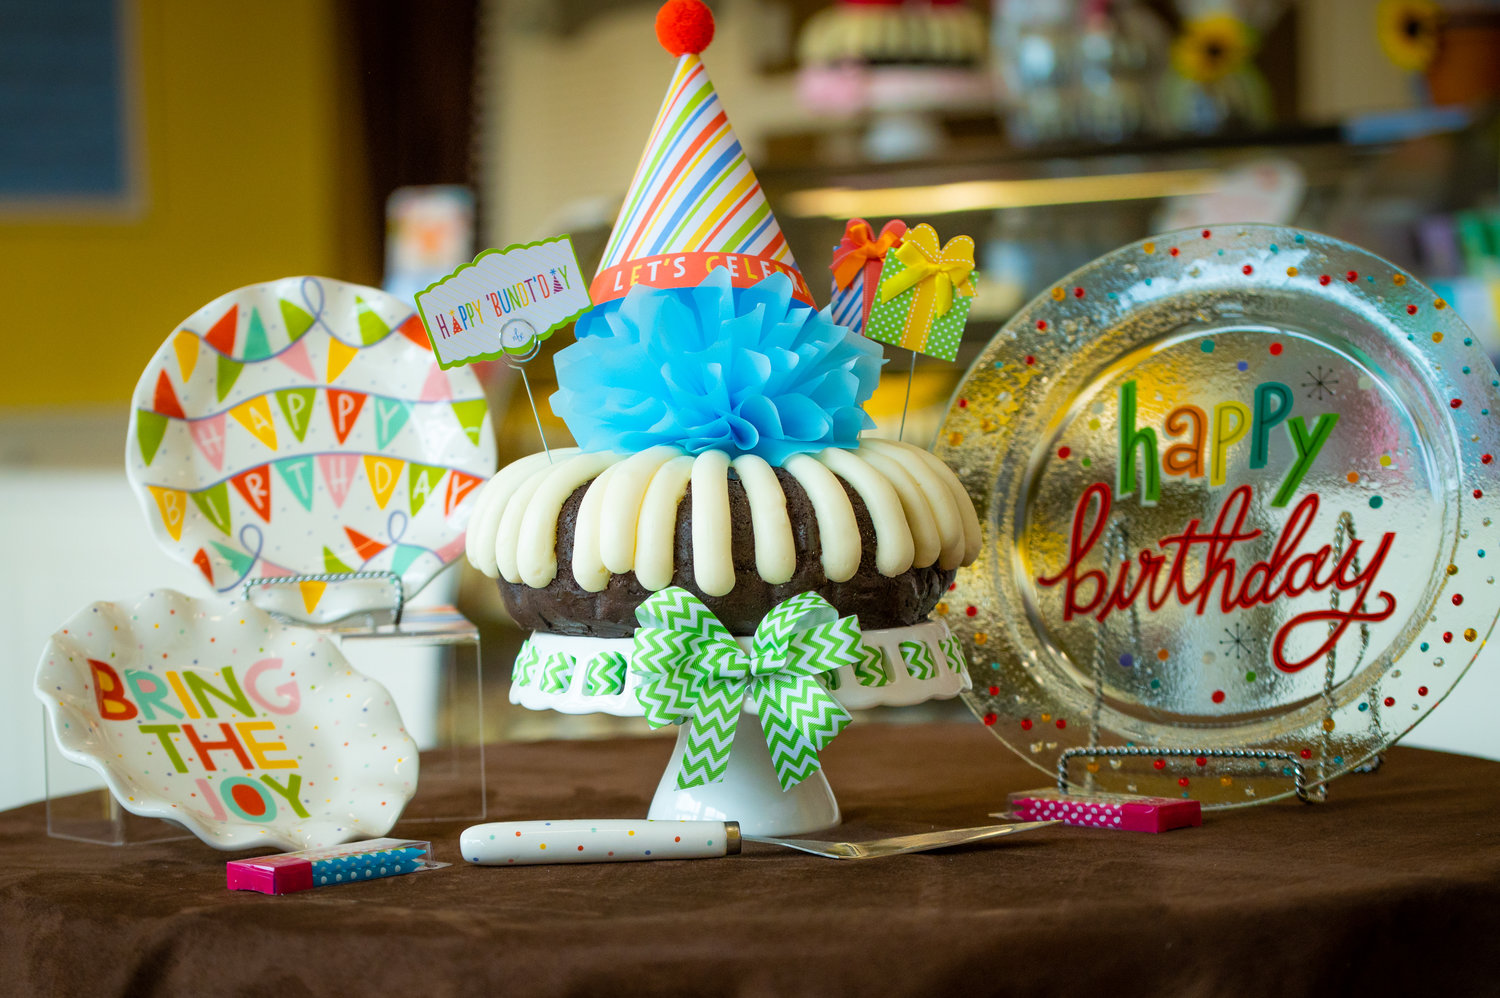 Celebrate Birthdays with a special Bundt Cake!